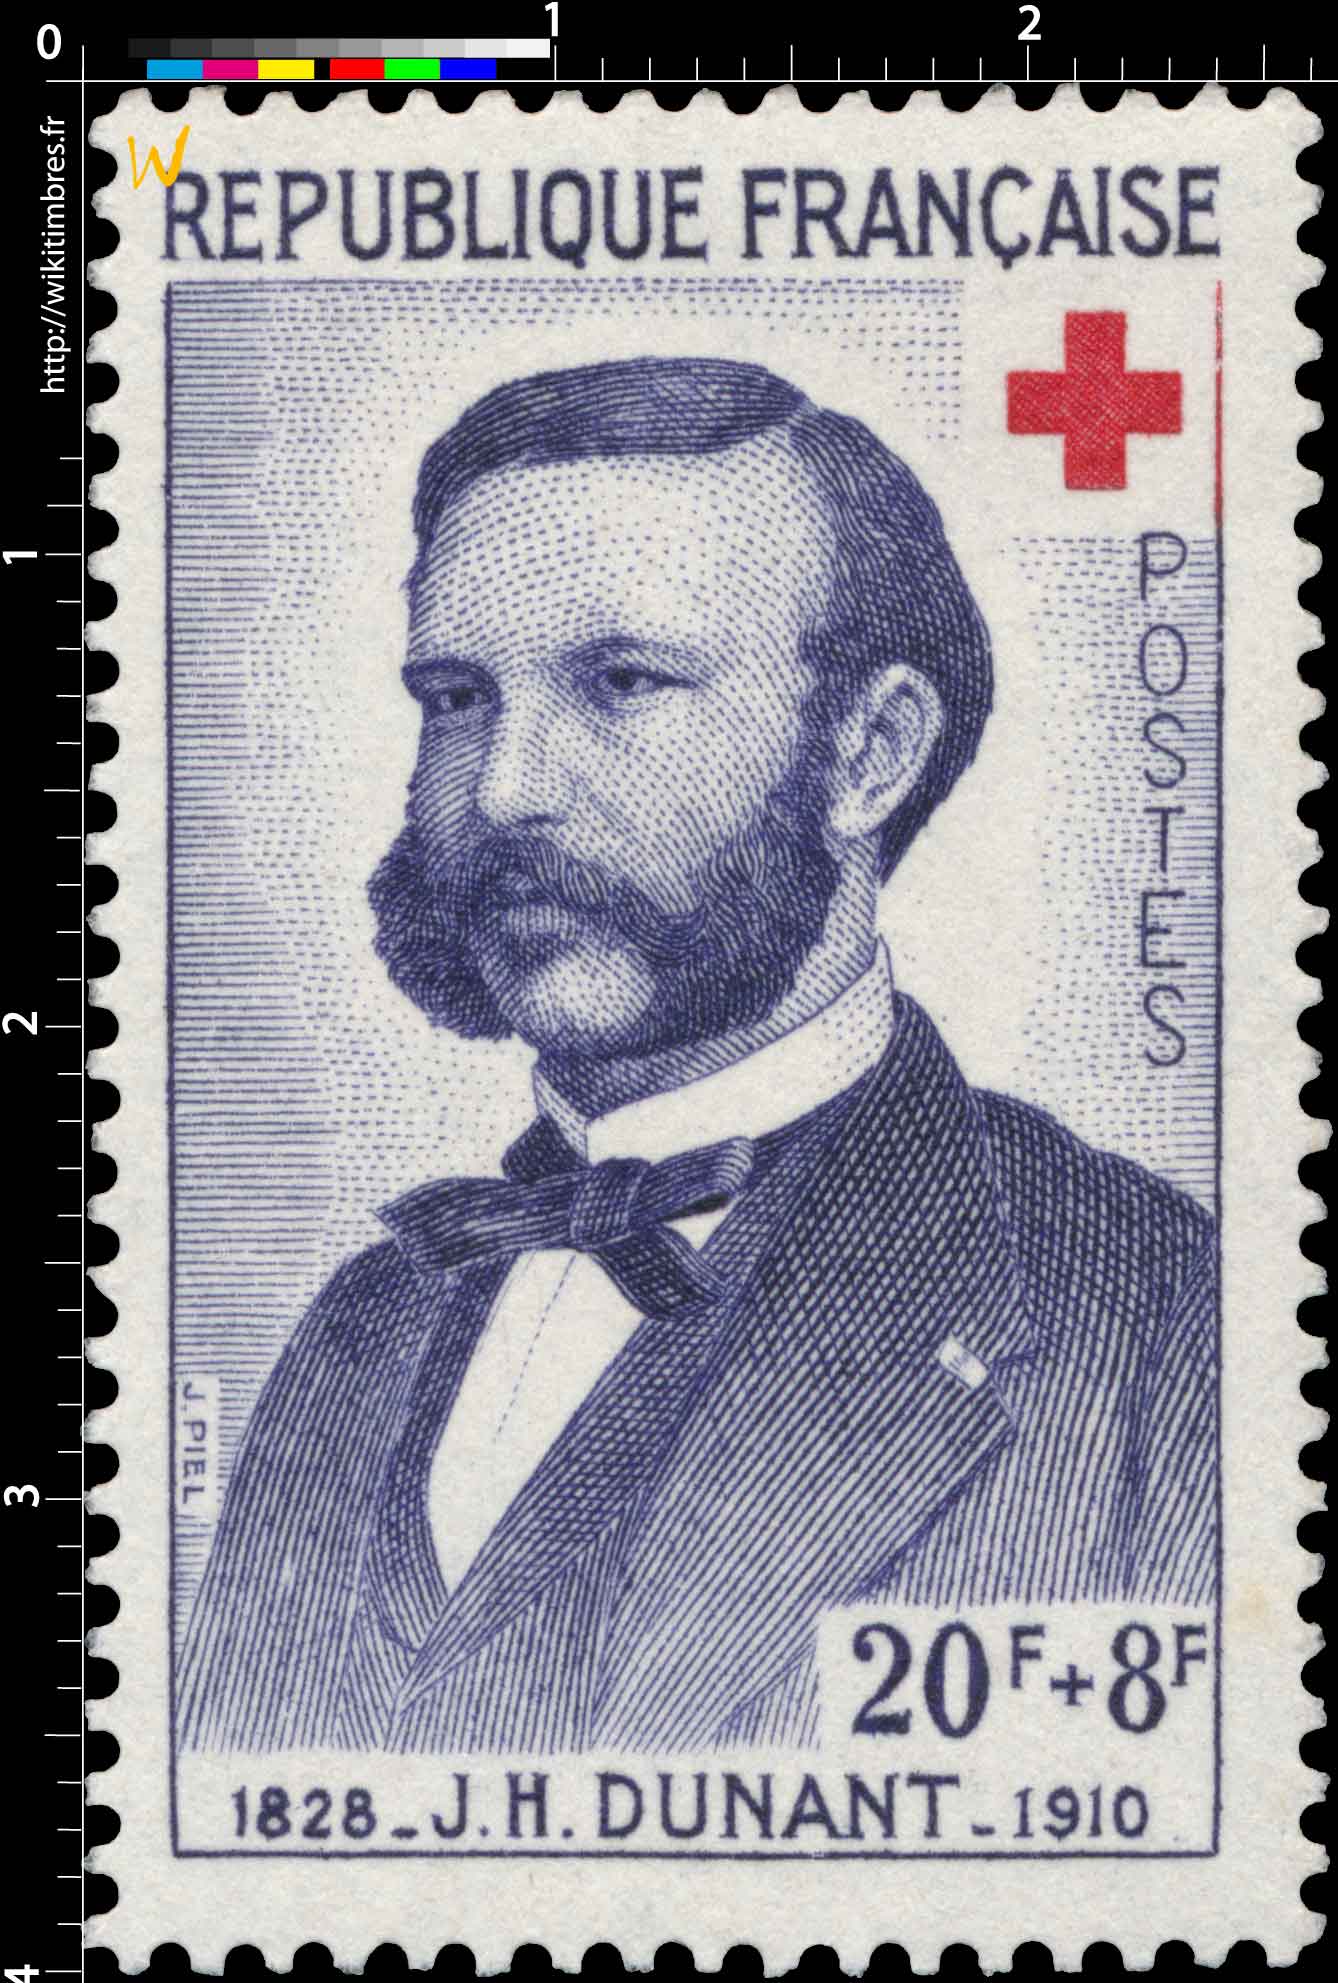 J. H. DUNANT 1828-1910